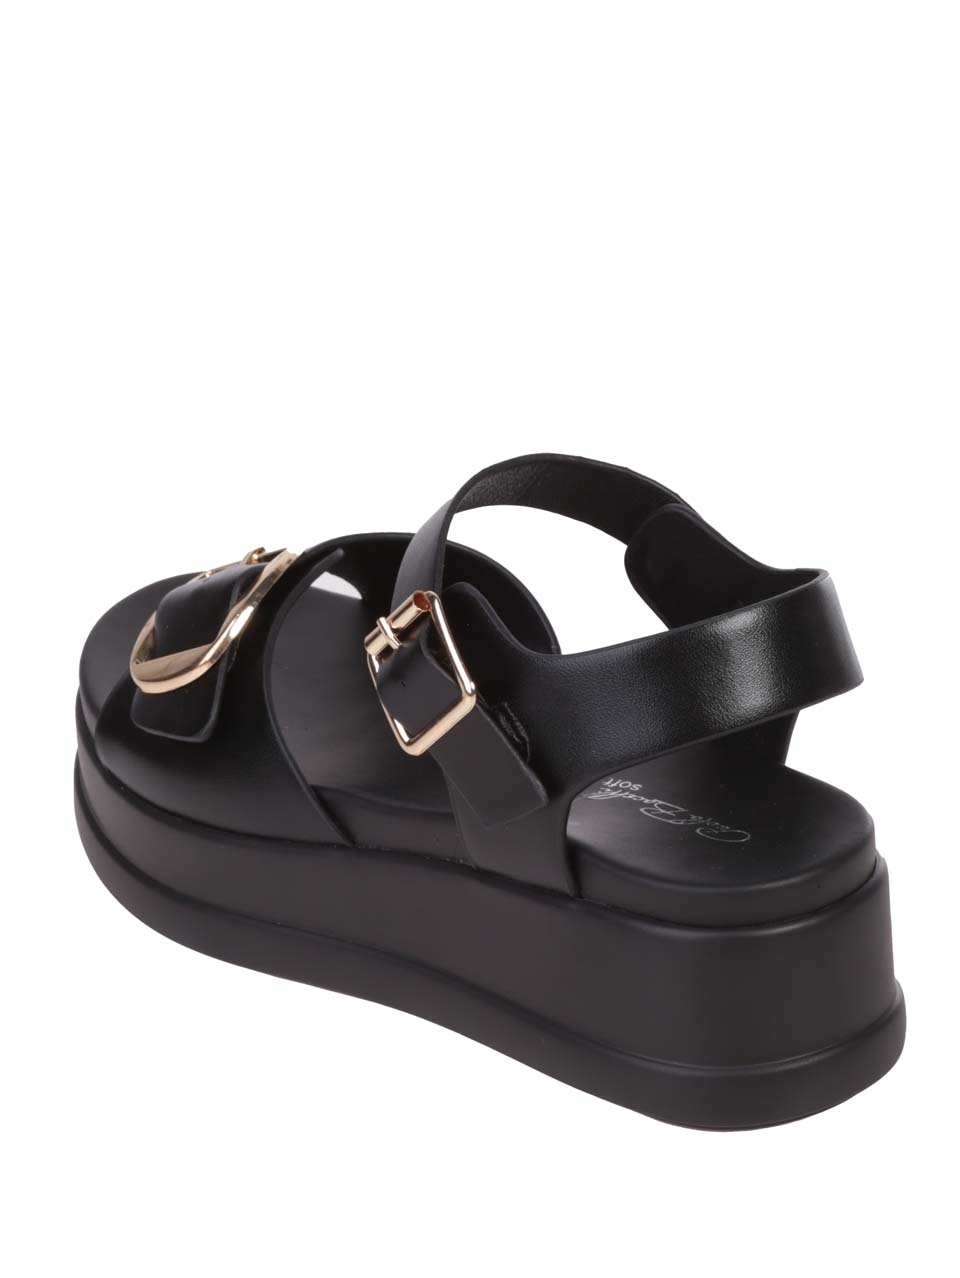 Ежедневни дамски сандали на платформа в черно 4H-24318 black